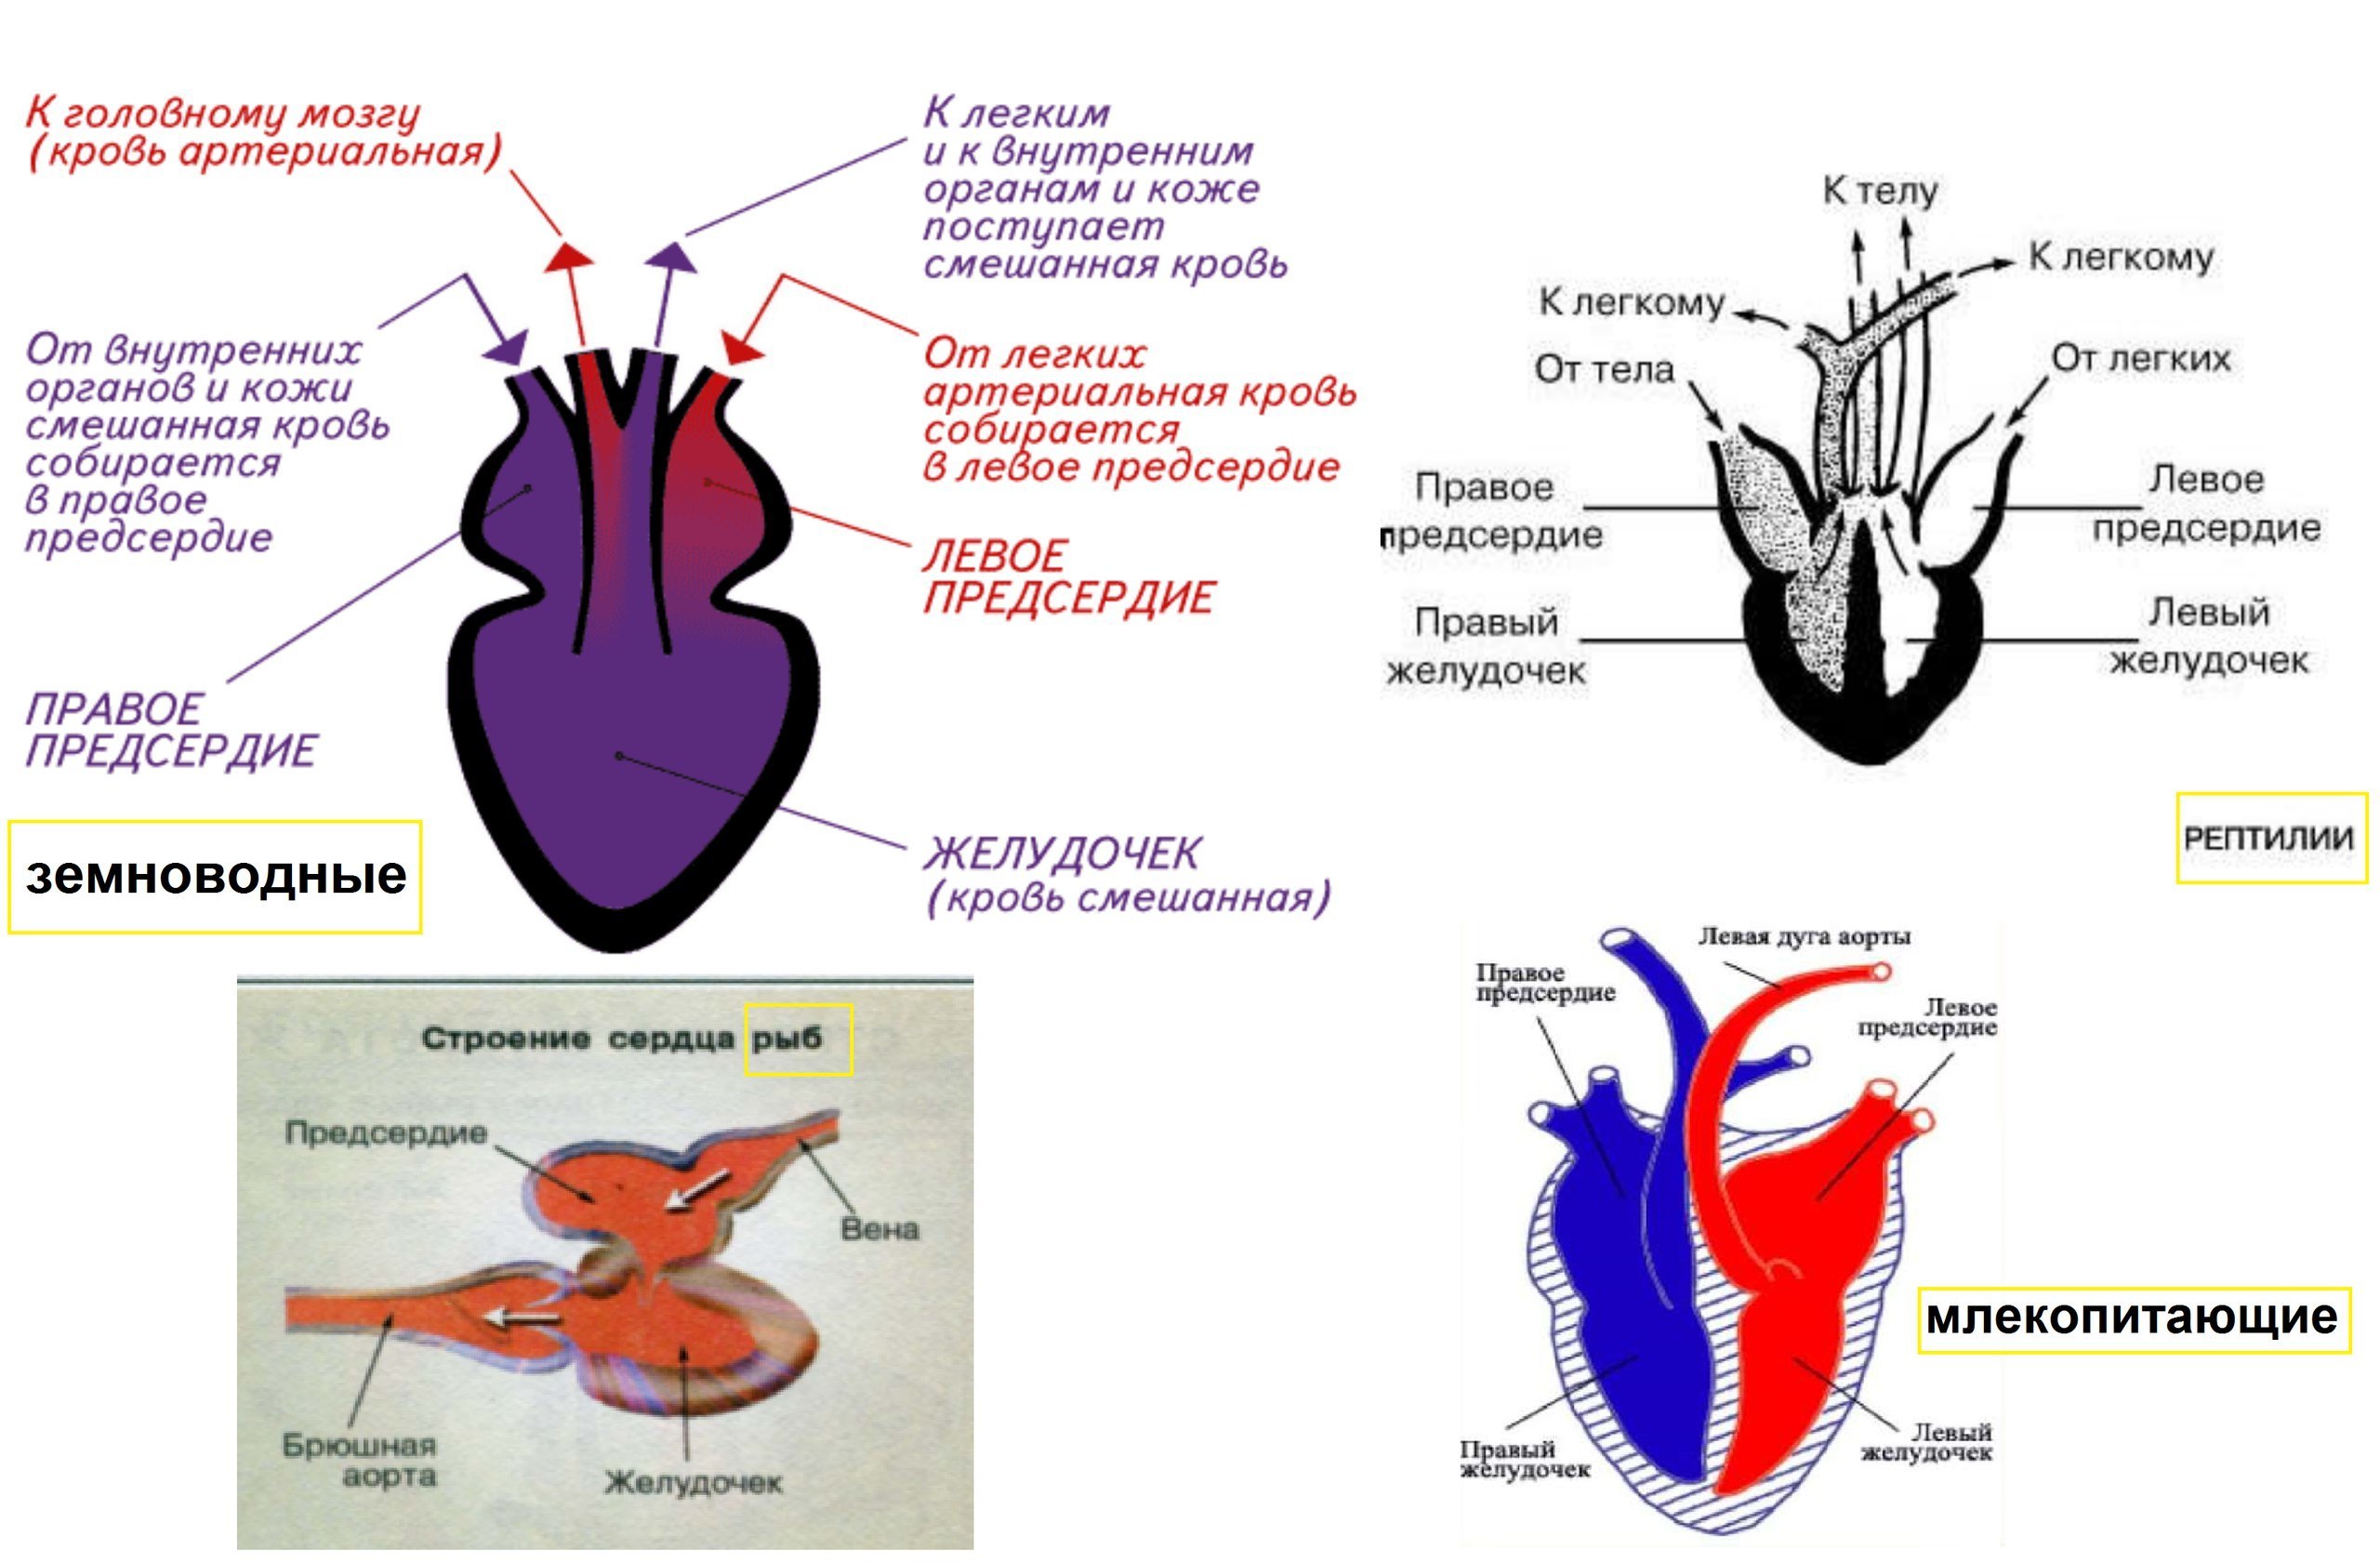 Земноводные строение кровеносной системы сходство и различия. Строение кровеносной системы амфибий схема. Схема строения кровеносной системы земноводных. Схема строения кровеносной системы позвоночных. Схема строения сердца амфибий.